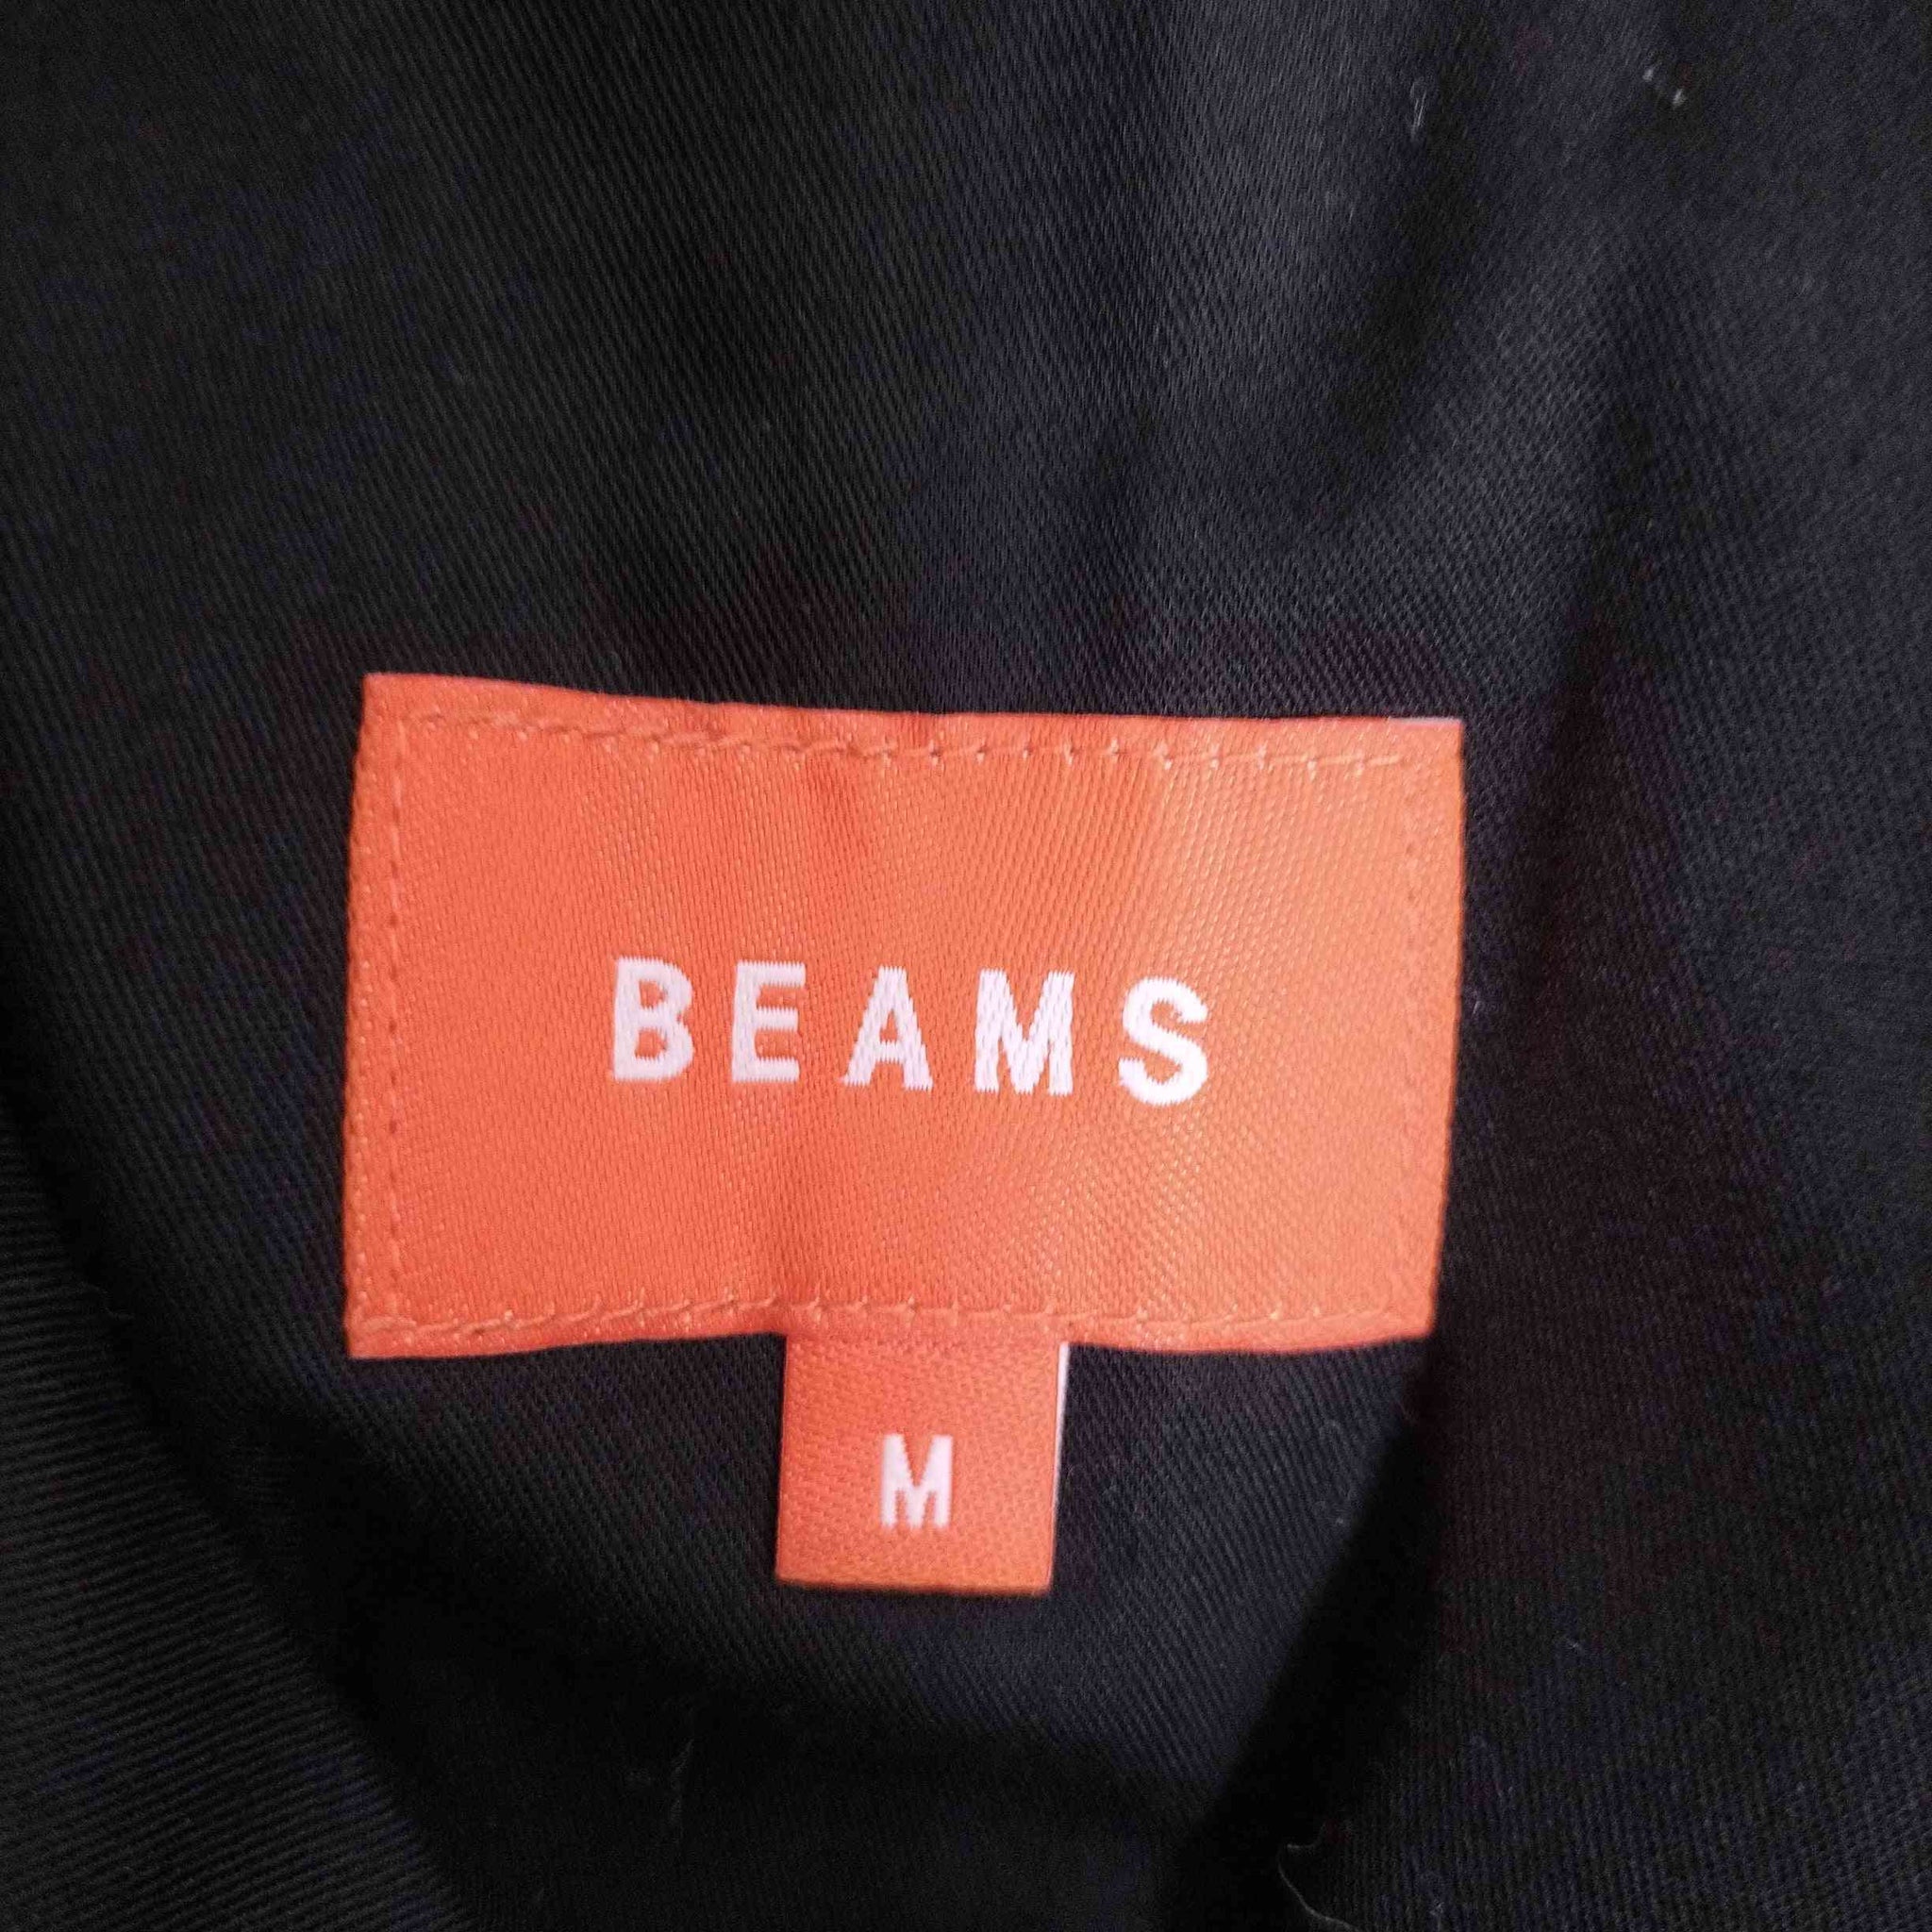 BEAMS(ビームス)フランネル シューカットパンツ